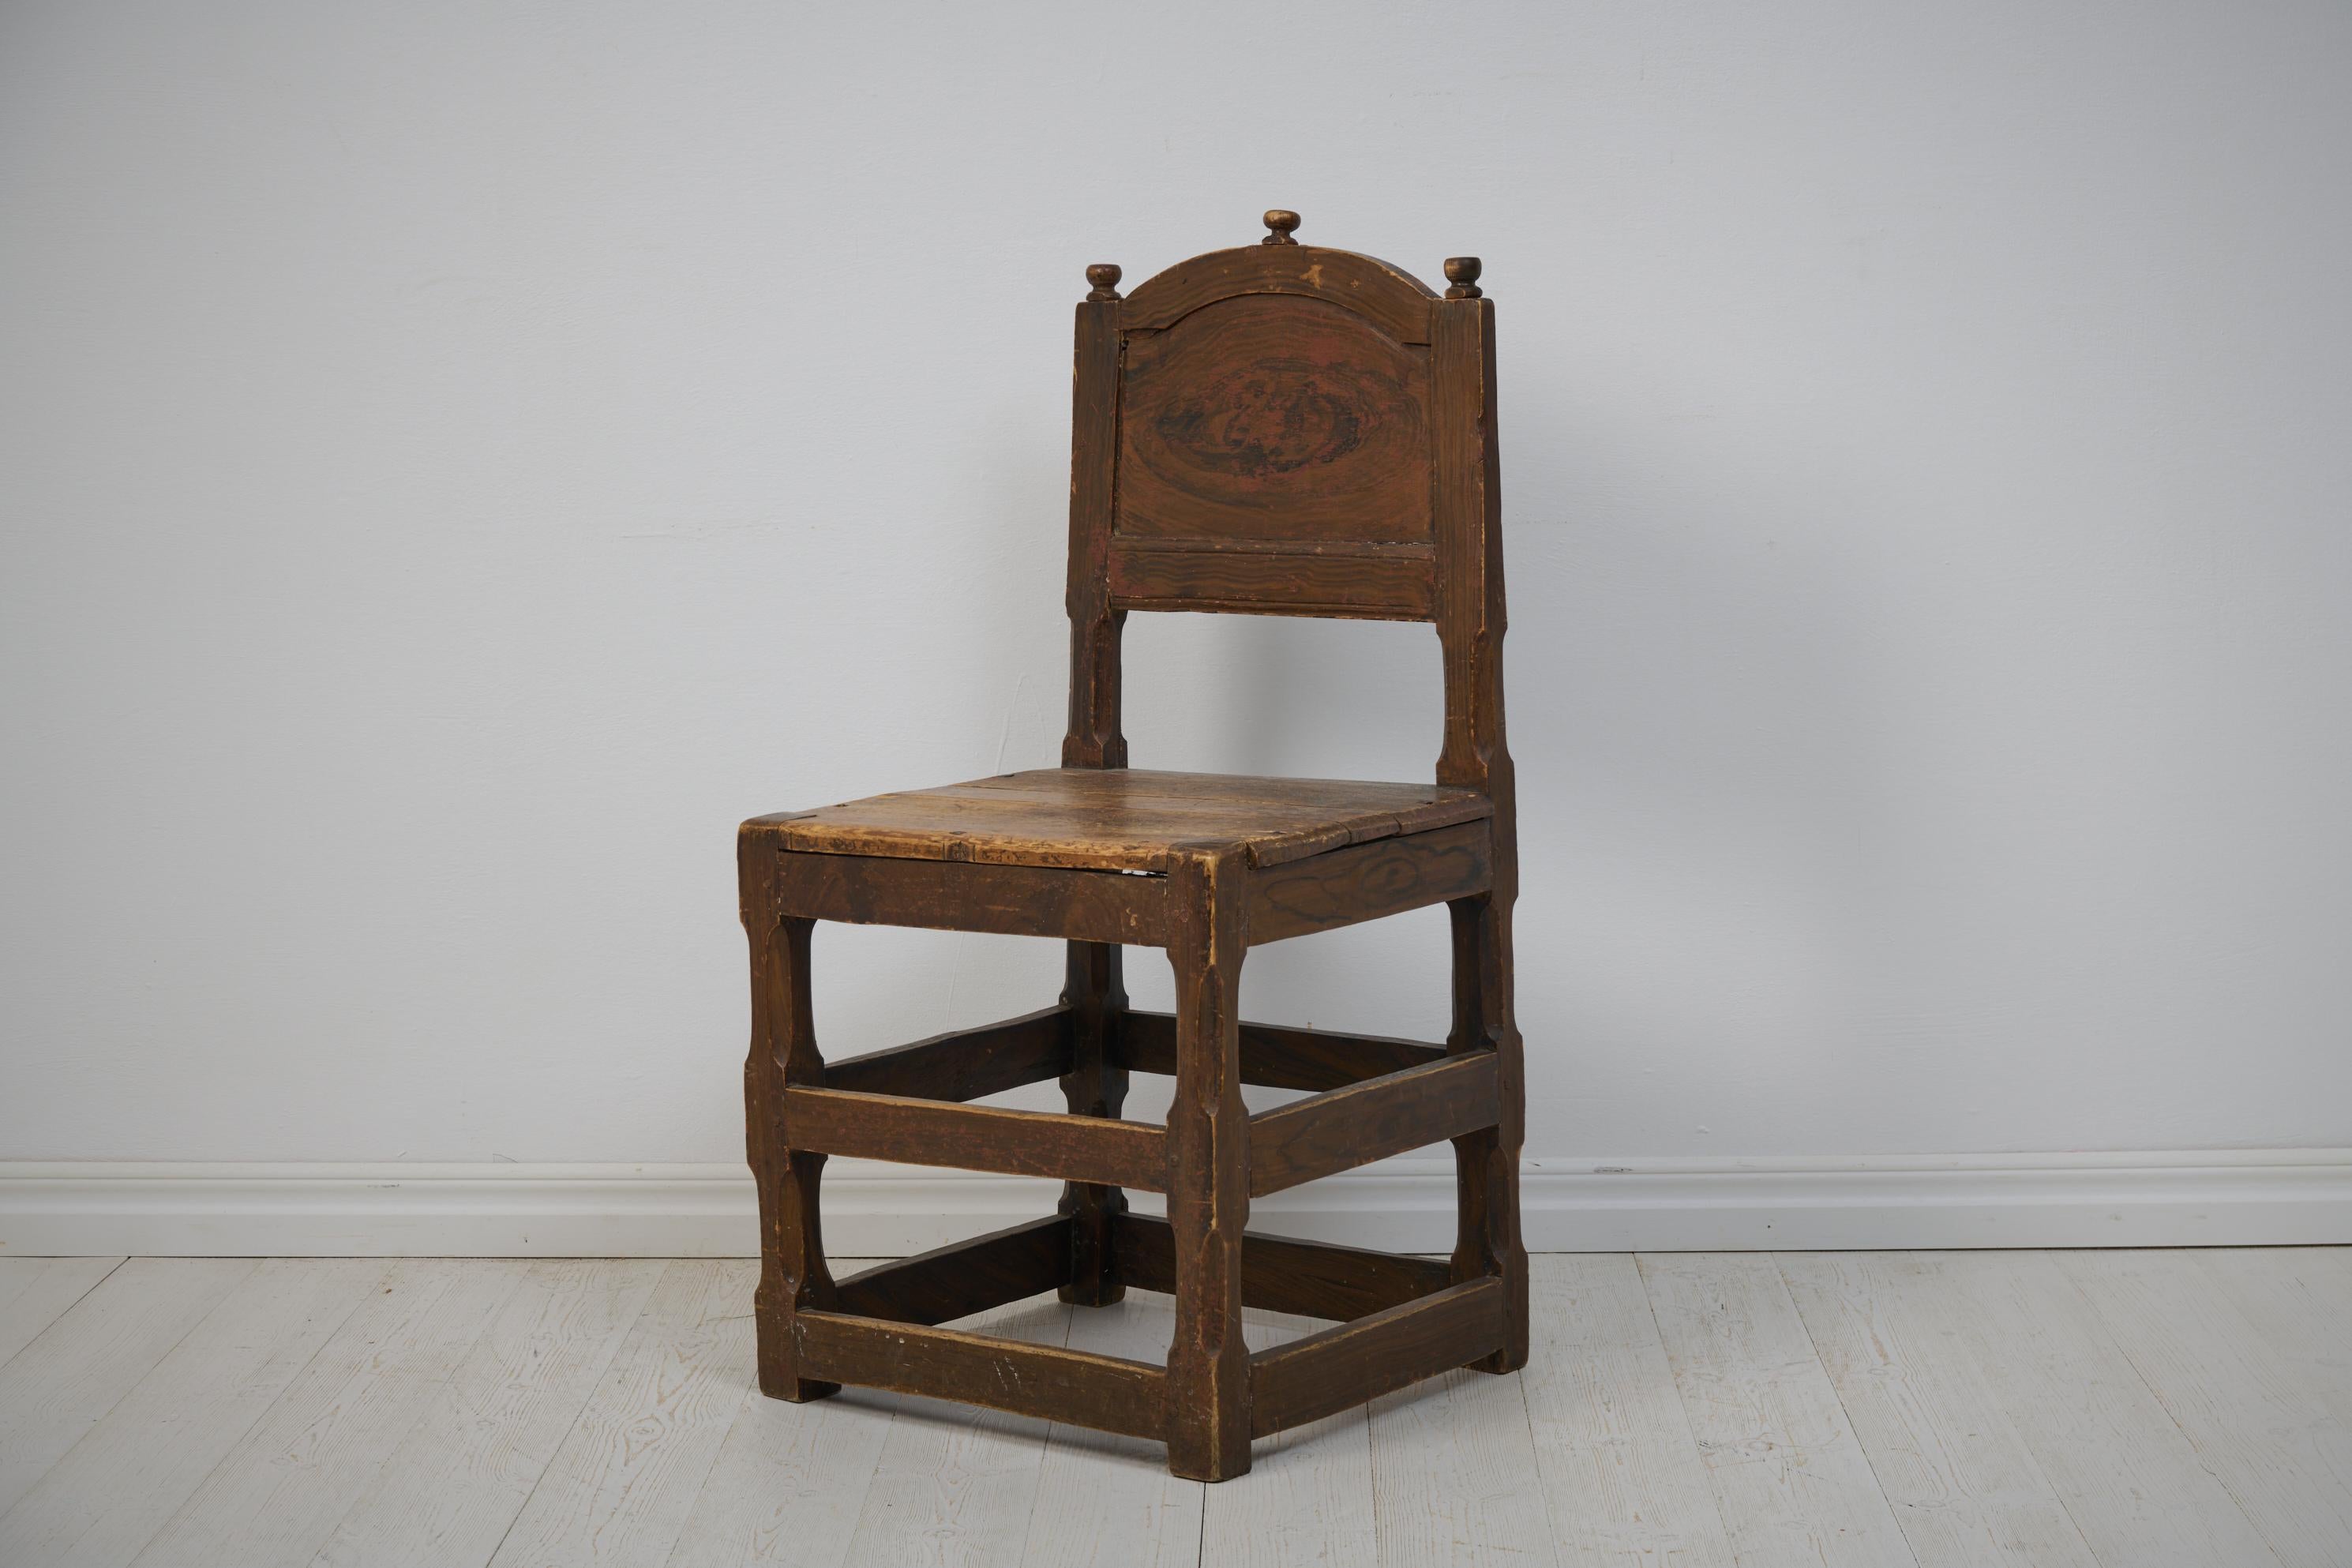 Ungewöhnlich großer Barockstuhl aus Schweden, hergestellt um 1770. Der Stuhl hat ein Gestell aus massivem Kiefernholz mit originaler Kunstfarbe. Der Maler hat eine freie Interpretation von Nussbaum vorgenommen. Die Farbe ist nach dem Gebrauch